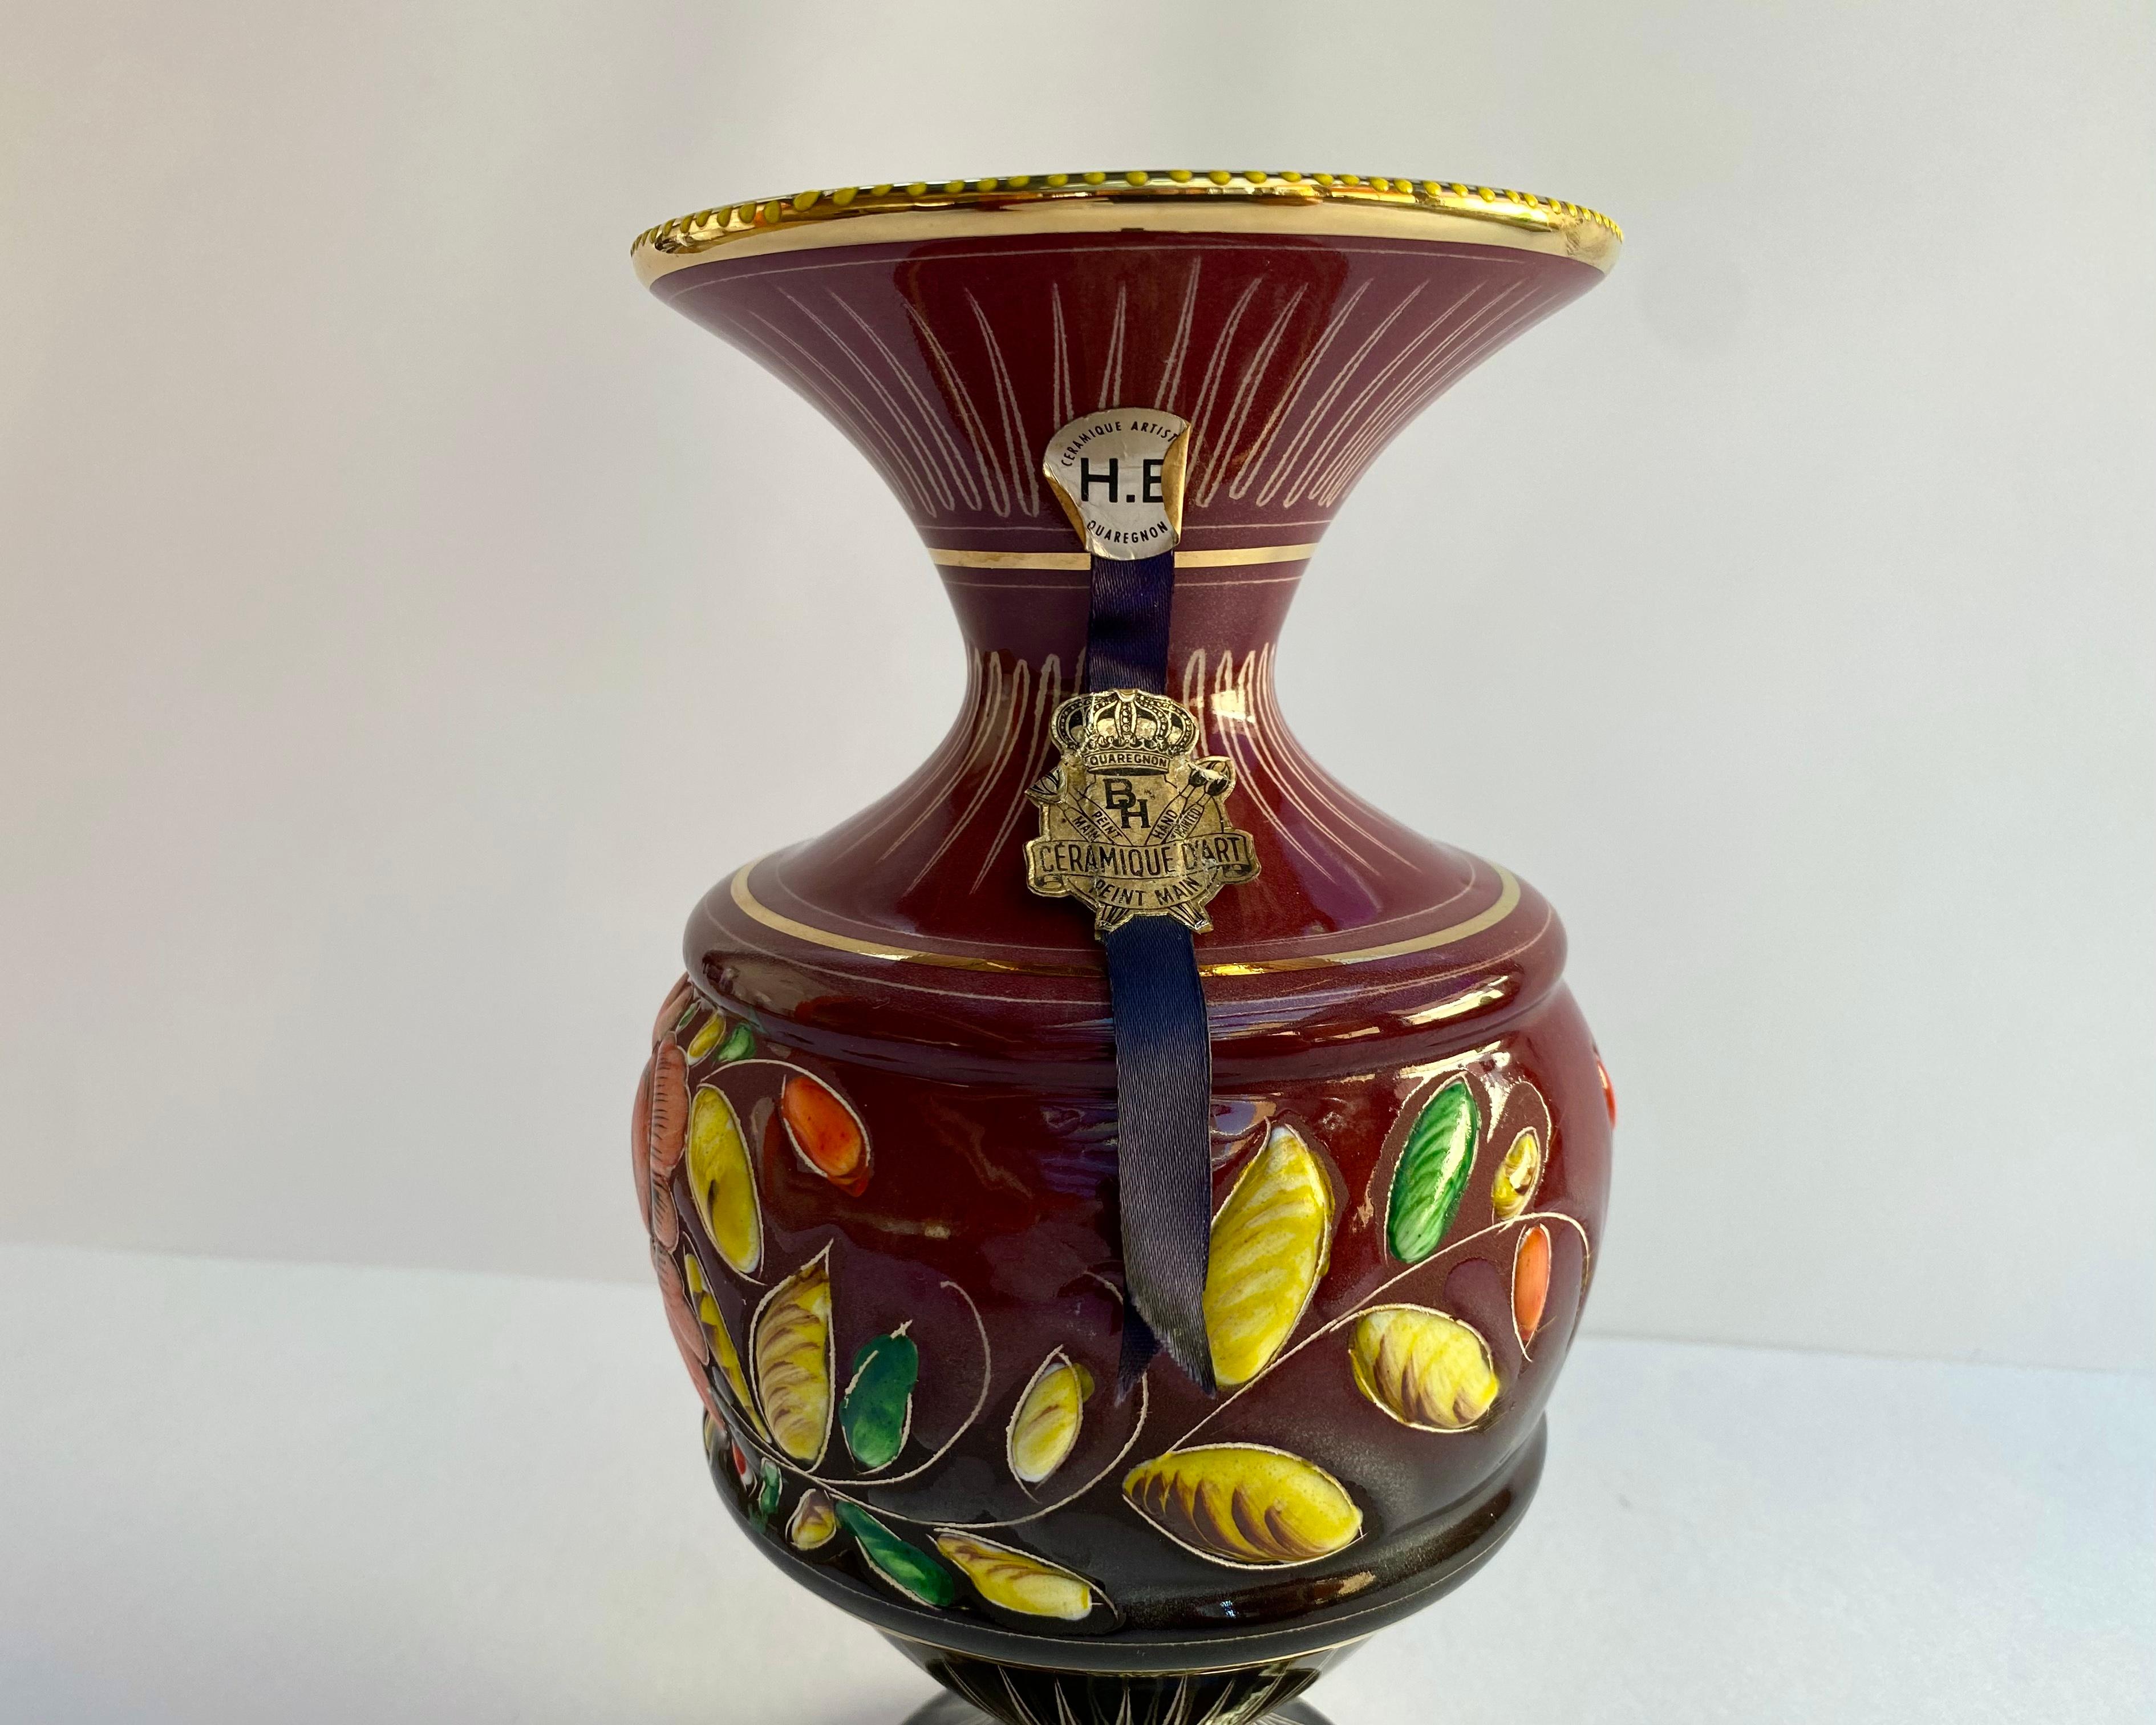 Vase en céramique des années 1950, attribué à Hubert Bequet Quaregnon, avec un beau fond bordeaux décoré d'un motif émaillé en relief de couleurs vives représentant des fleurs colorées.u2028u2028

Tous les objets sont fabriqués et peints à la